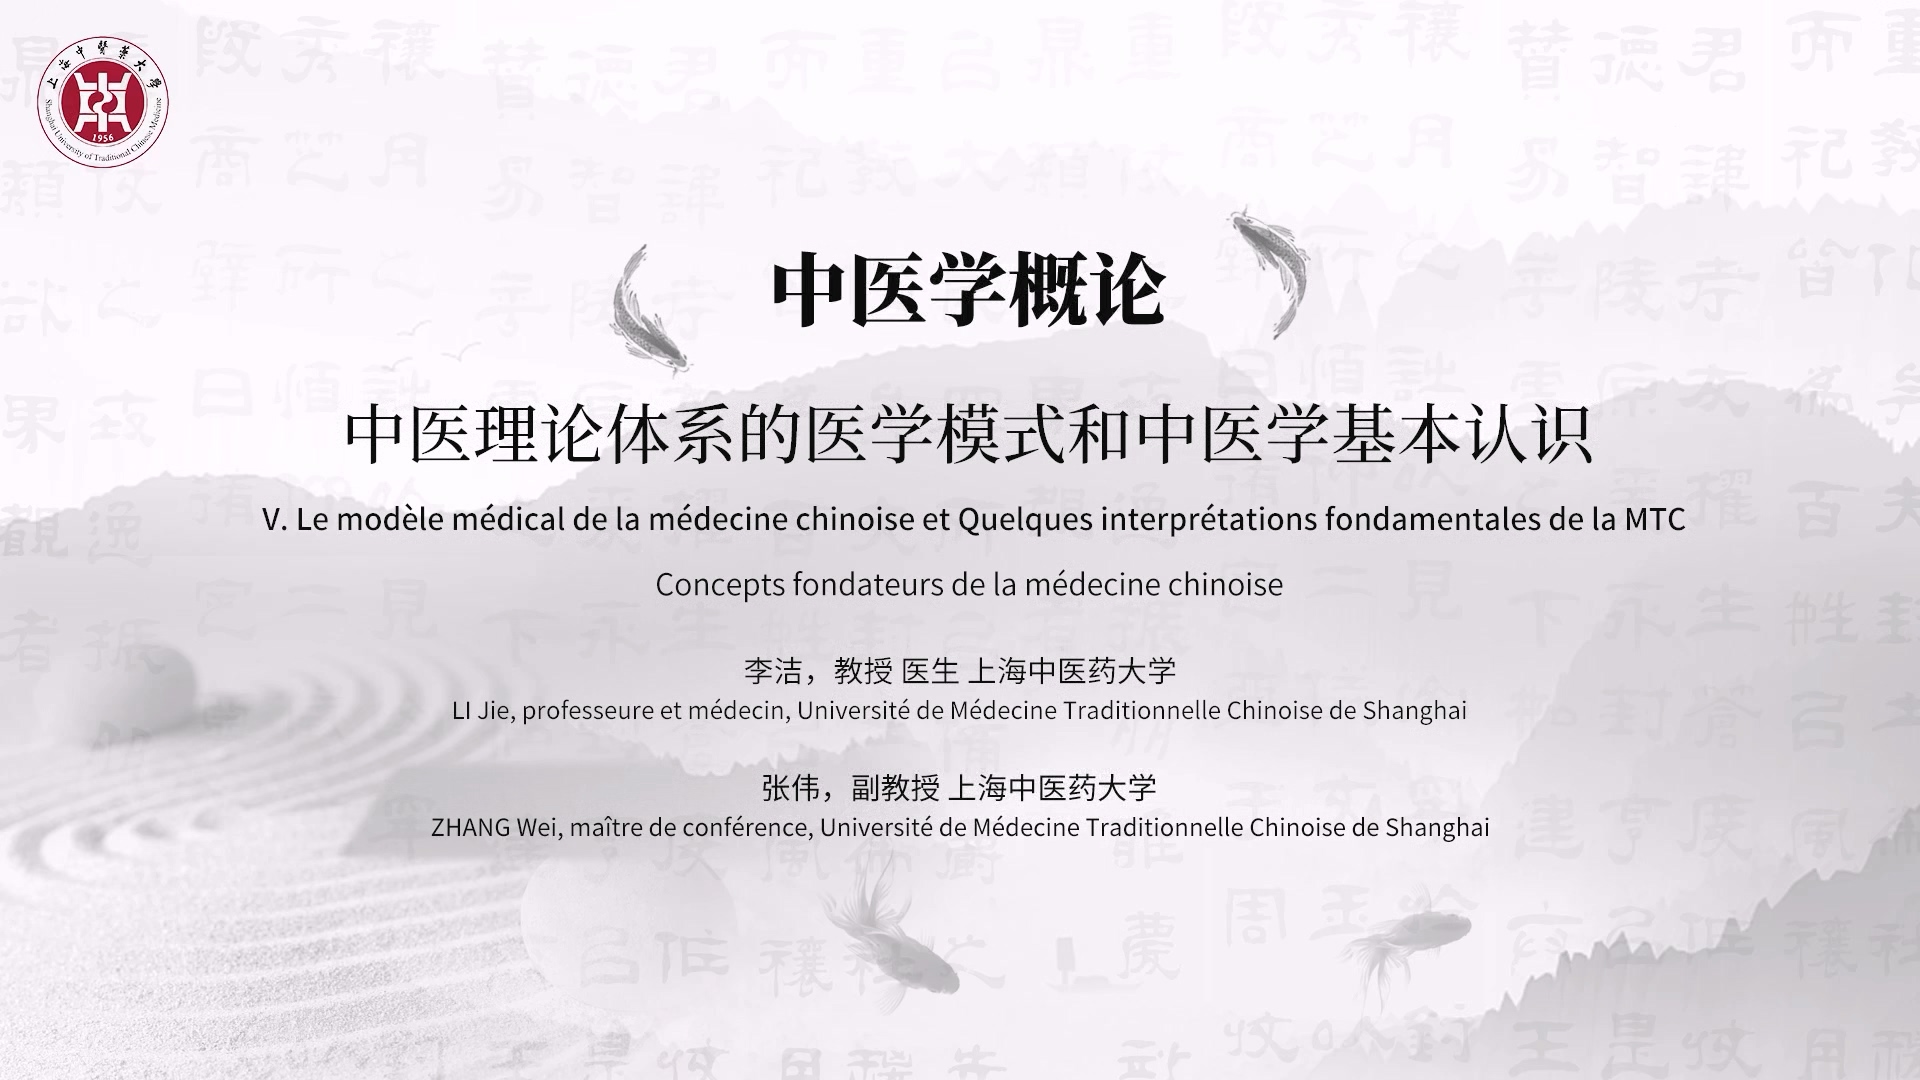 1.7 V. Le modèle médical de la médecine chinoise et Quelques interprétations fondamentales de la MTC